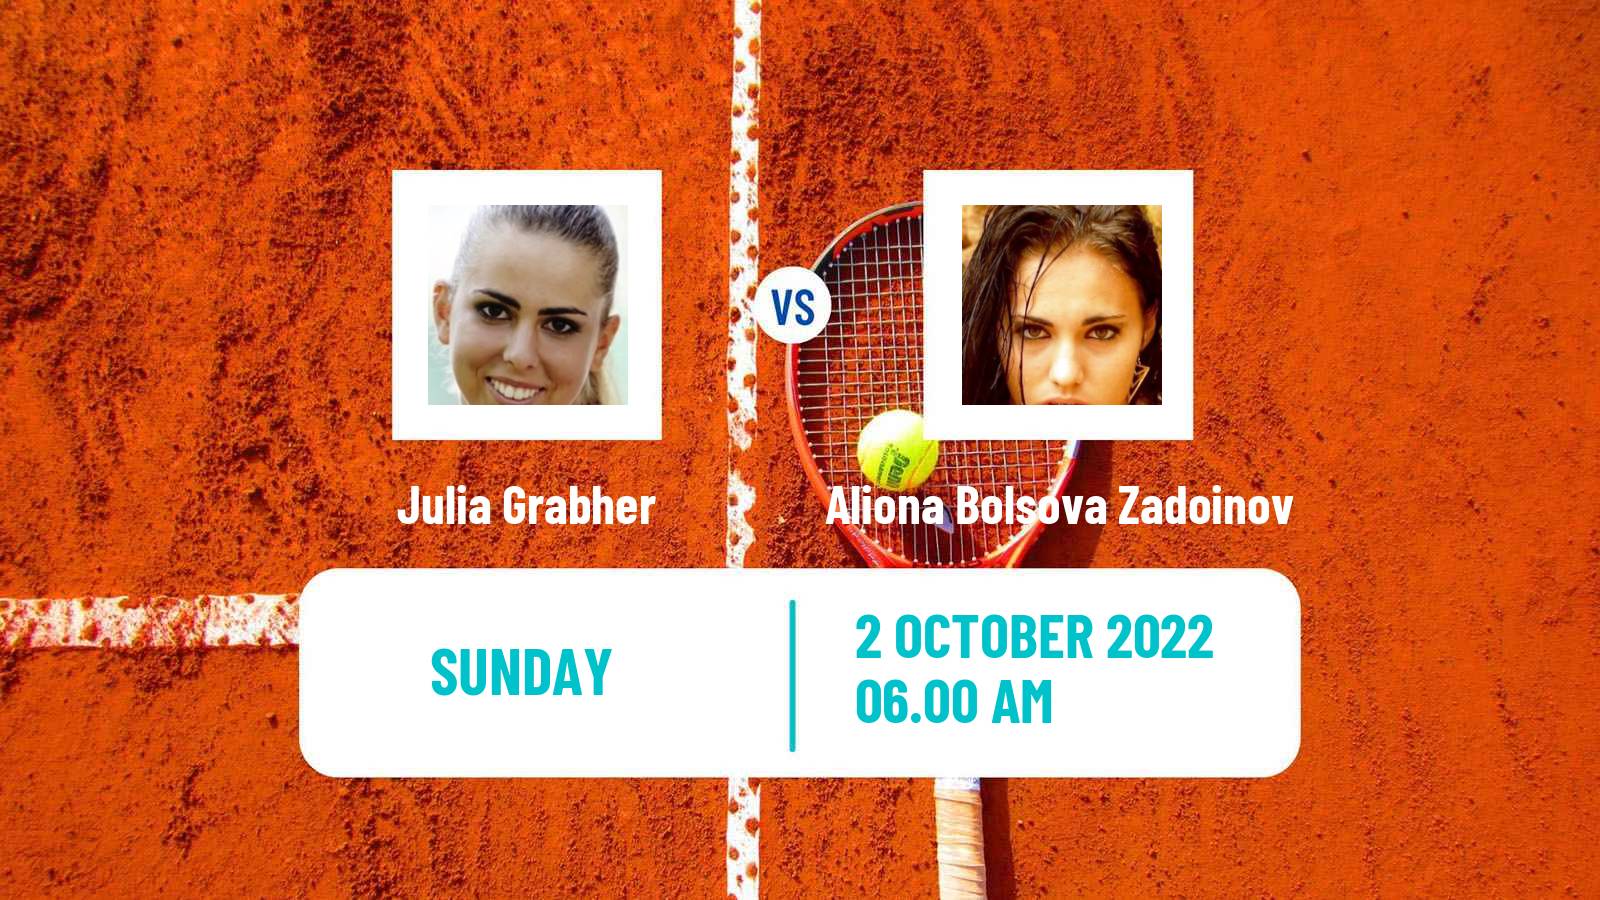 Tennis ITF Tournaments Julia Grabher - Aliona Bolsova Zadoinov